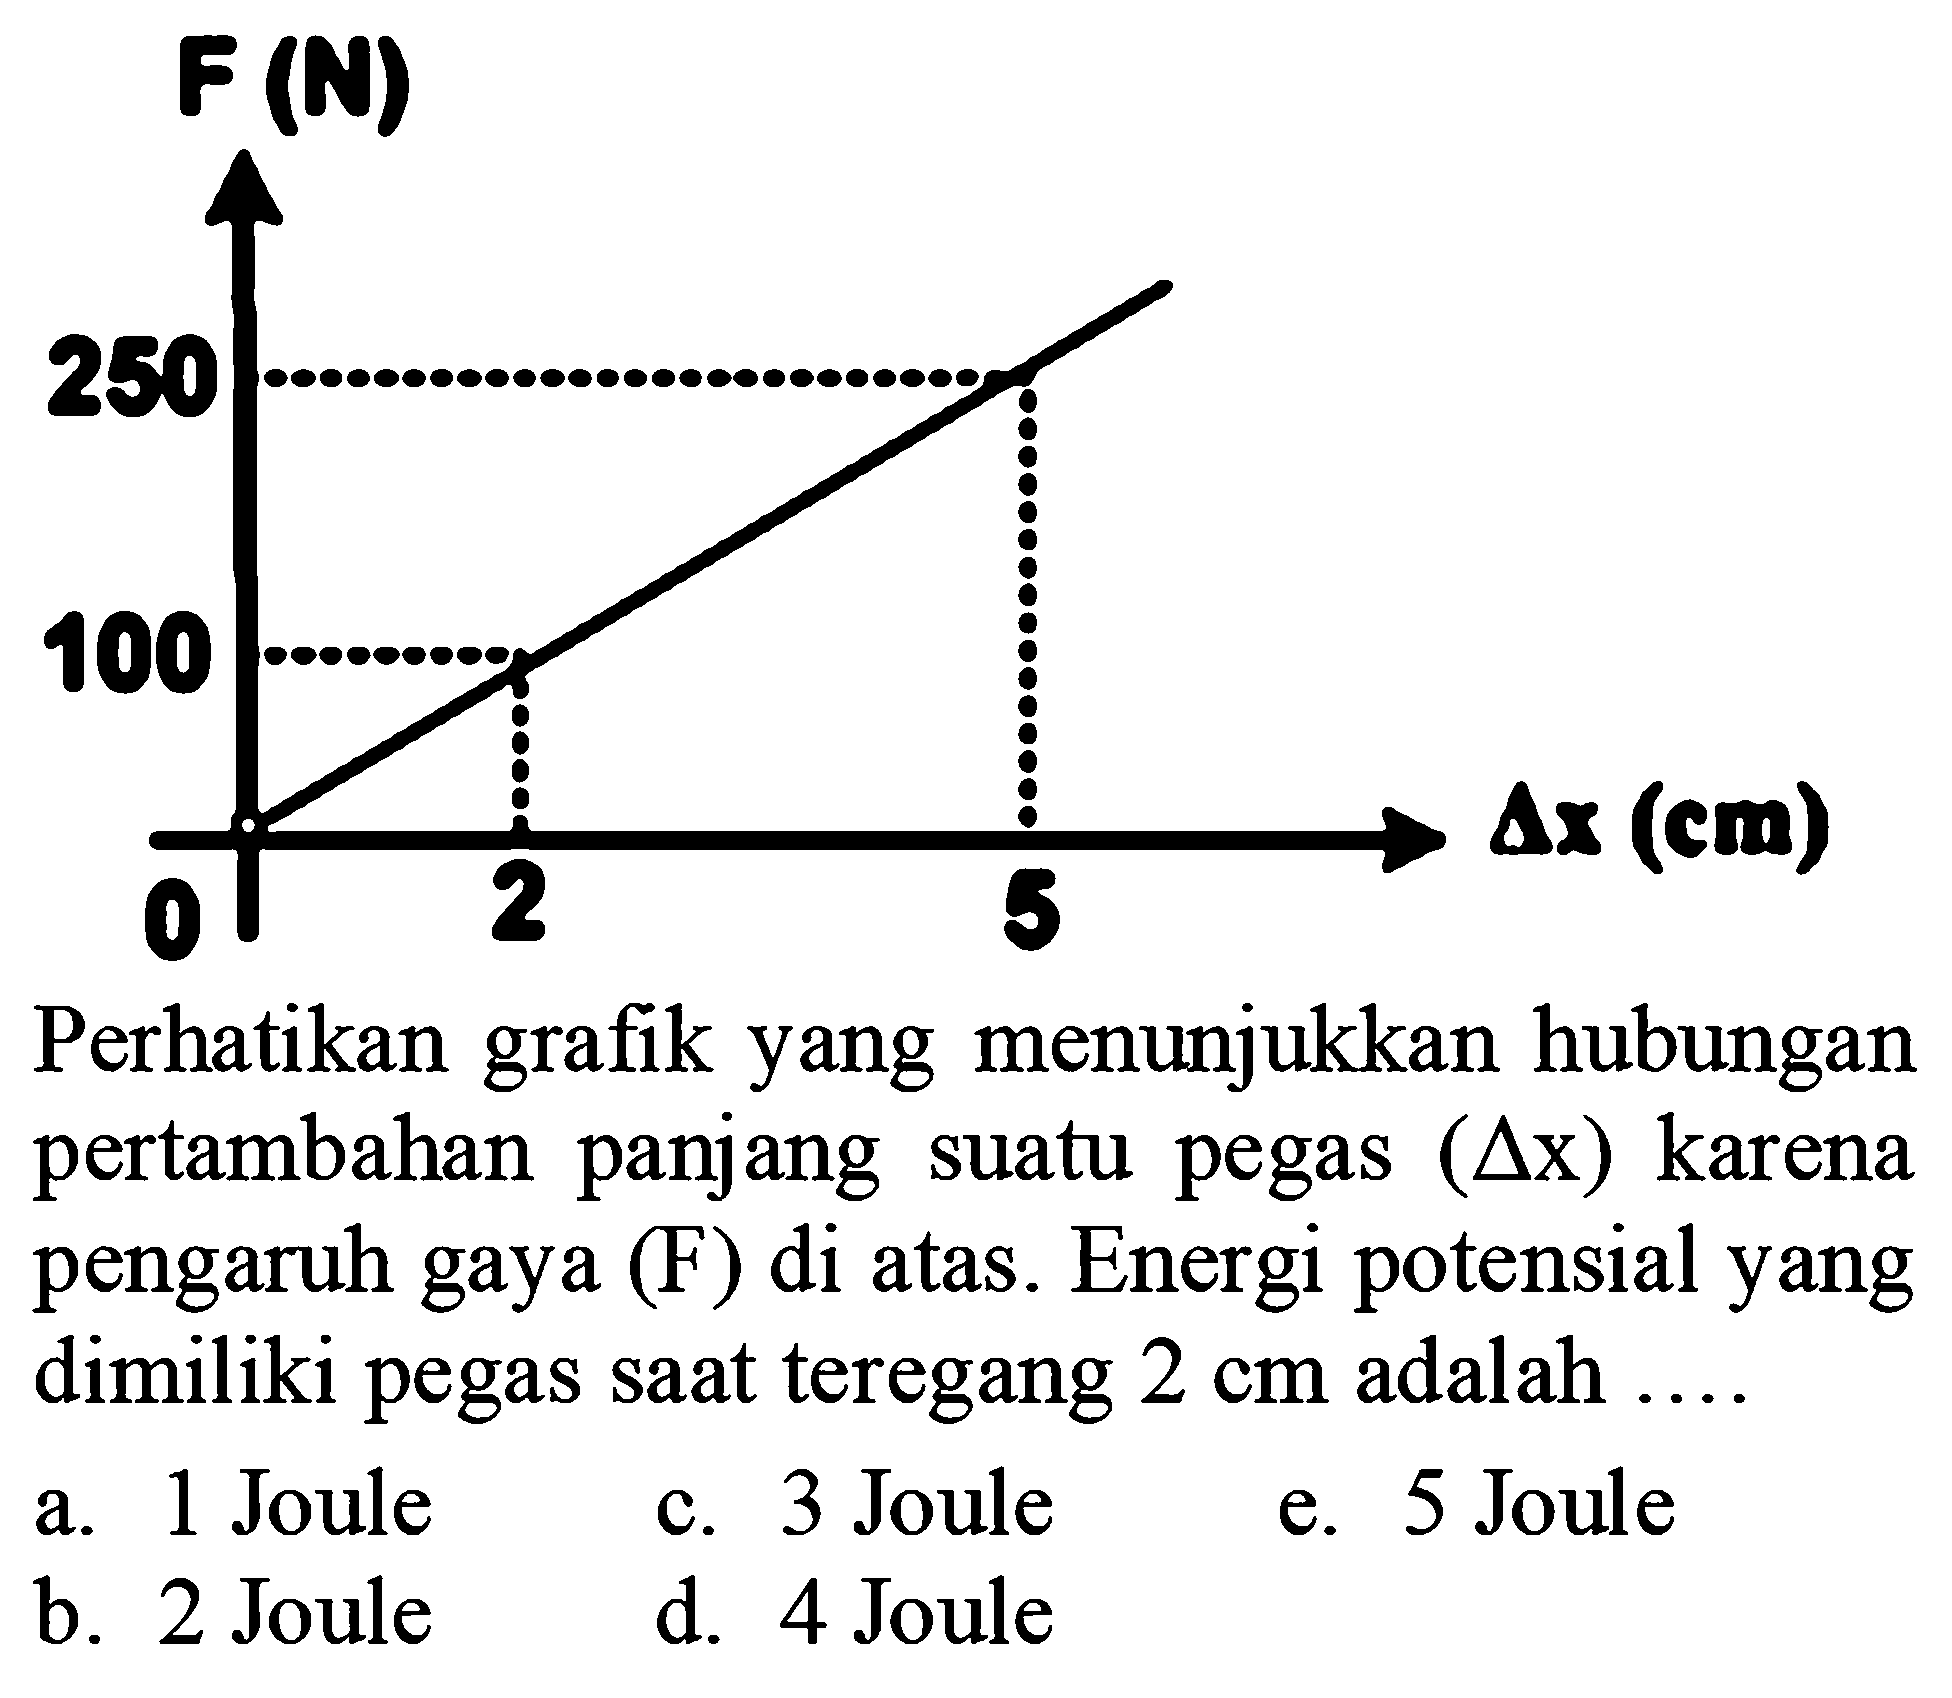 F (N) 250 100 0 2 5 Delta x (cm) Perhatikan grafik yang menunjukkan hubungan pertambahan panjang suatu pegas (Delta x) karena pengaruh gaya (F) di atas. Energi potensial yang dimiliki pegas saat teregang 2 cm adalah ...